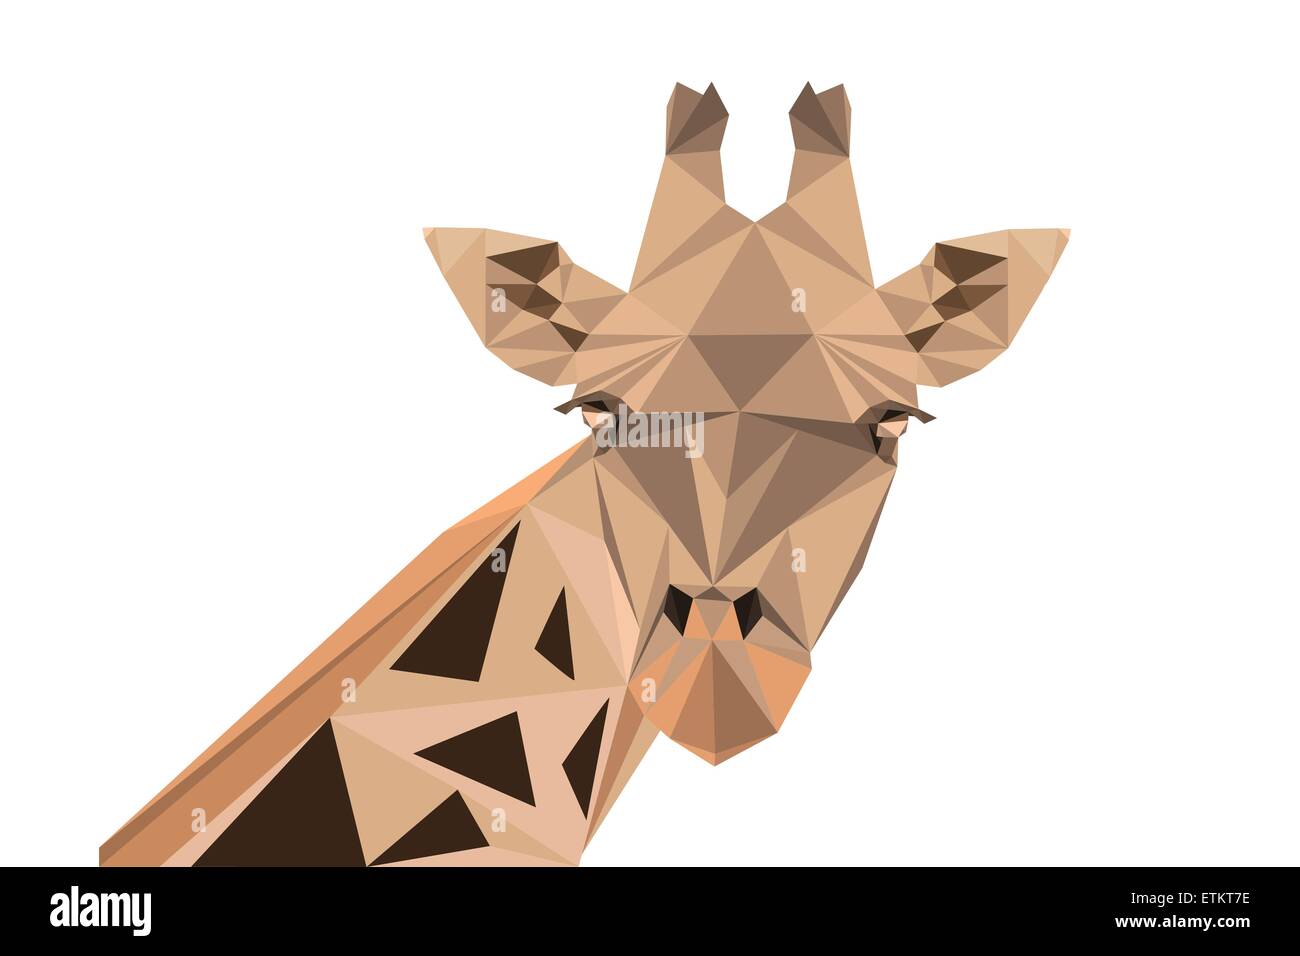 Abstrakte polygonalen Vektor-Illustration. Porträt der Giraffe. Stock Vektor